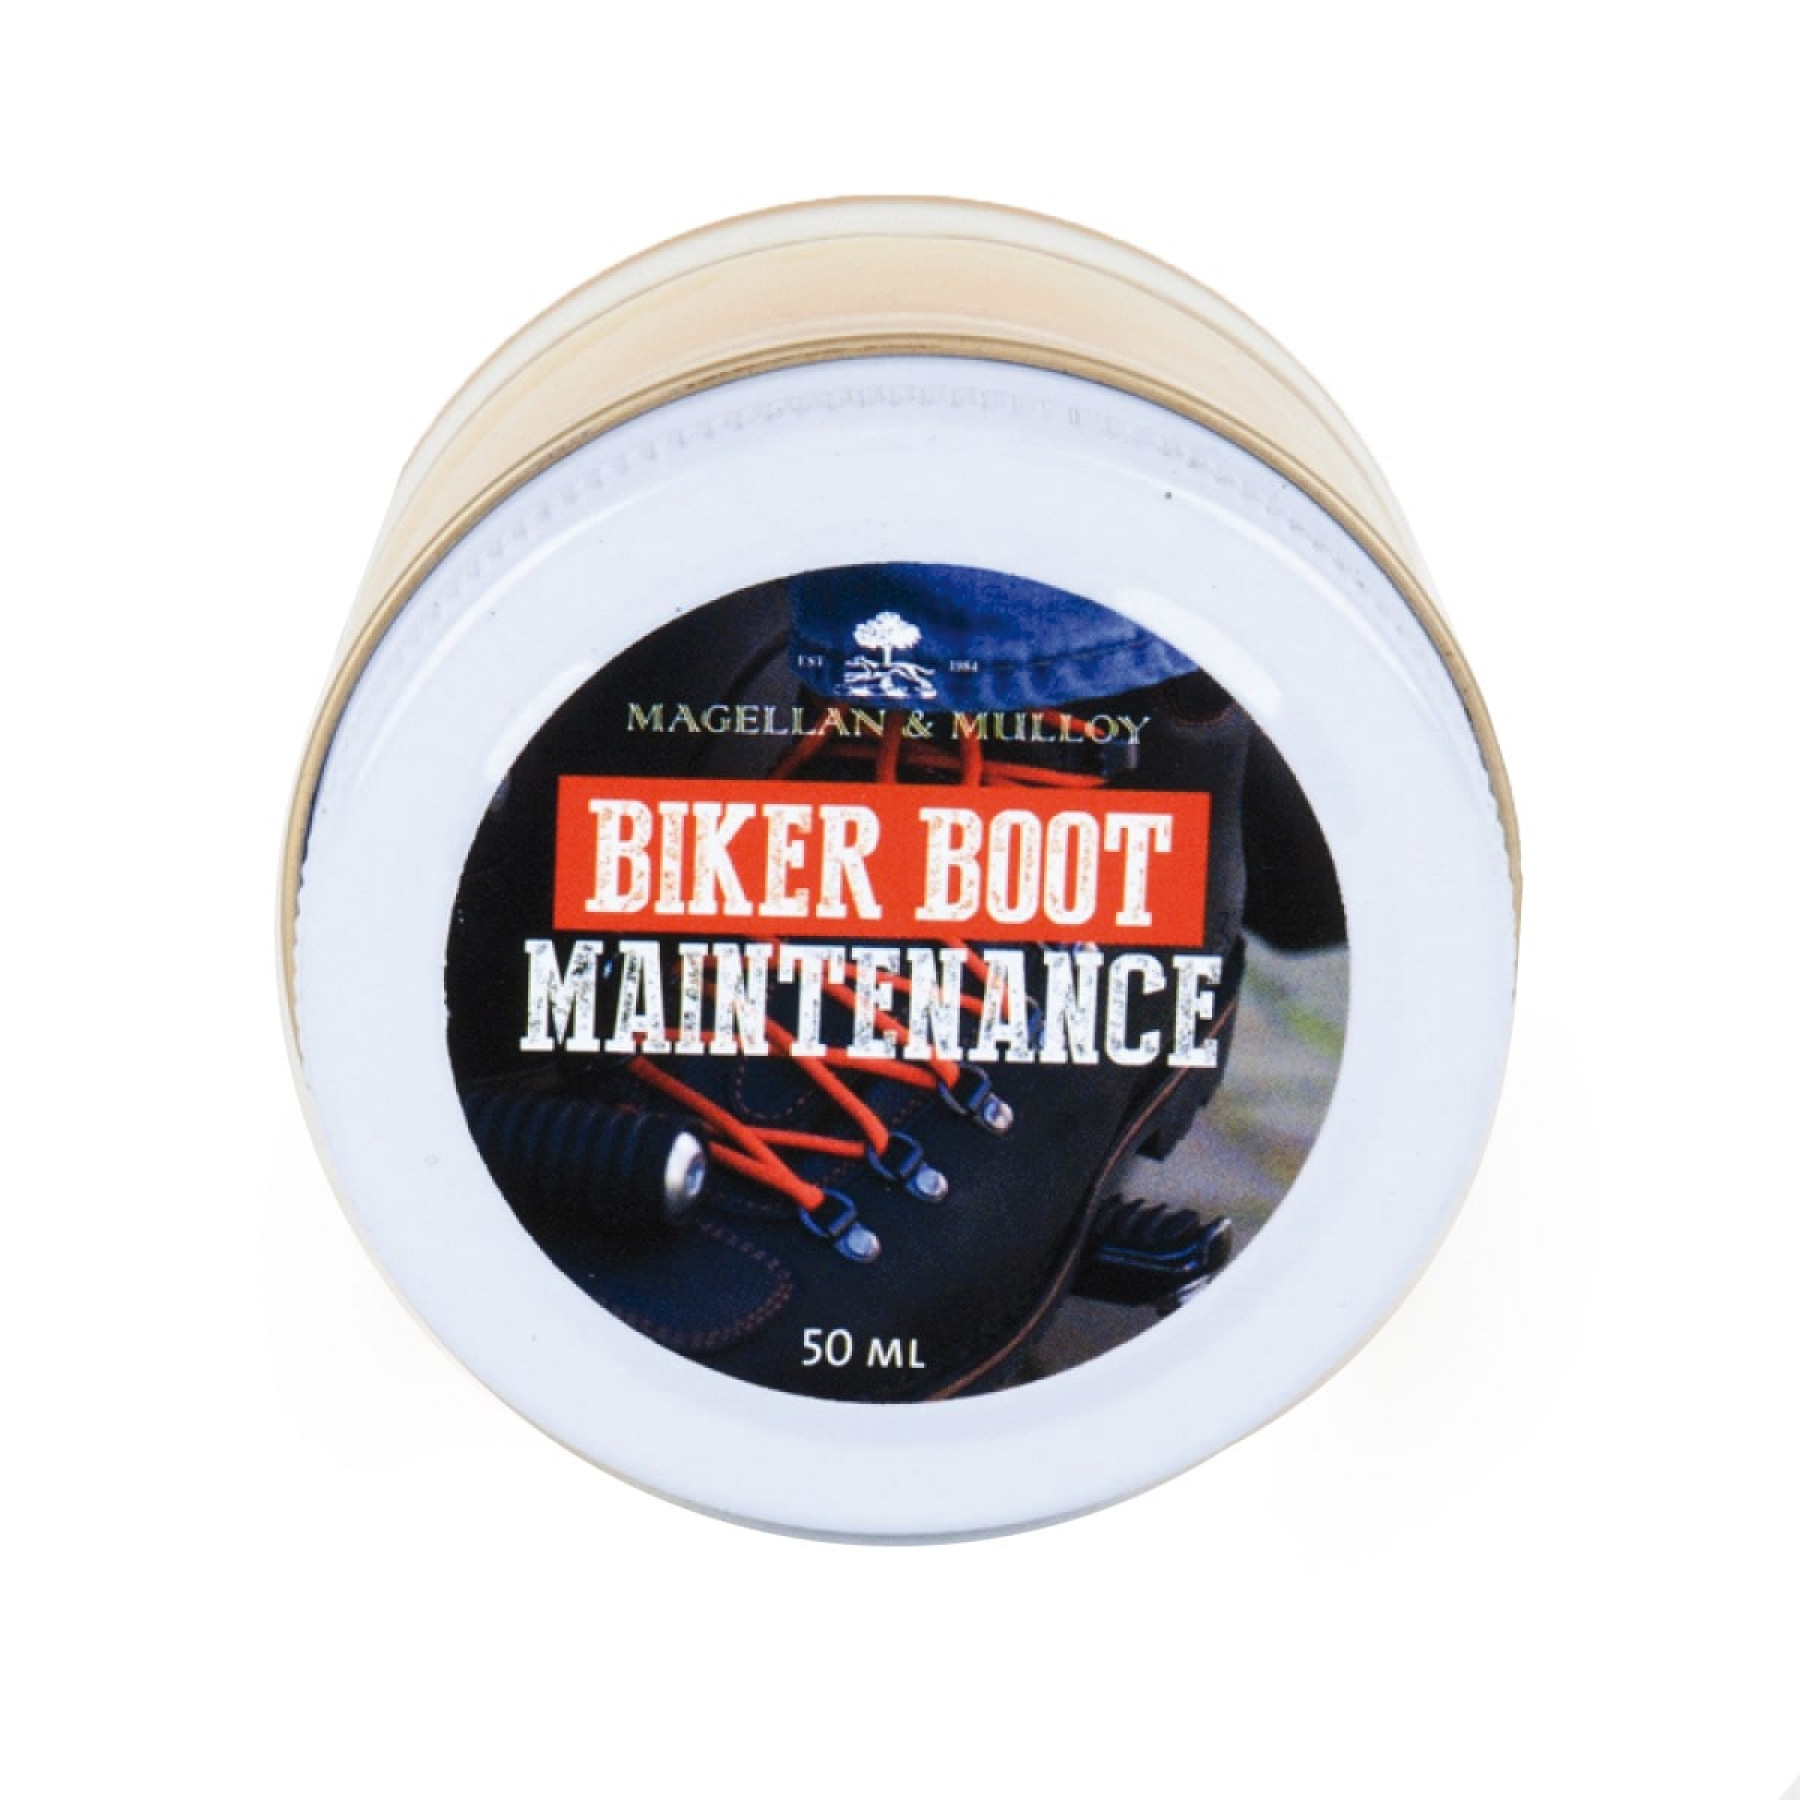 Biker Boot Maintenance, 50ml, 2 stuks